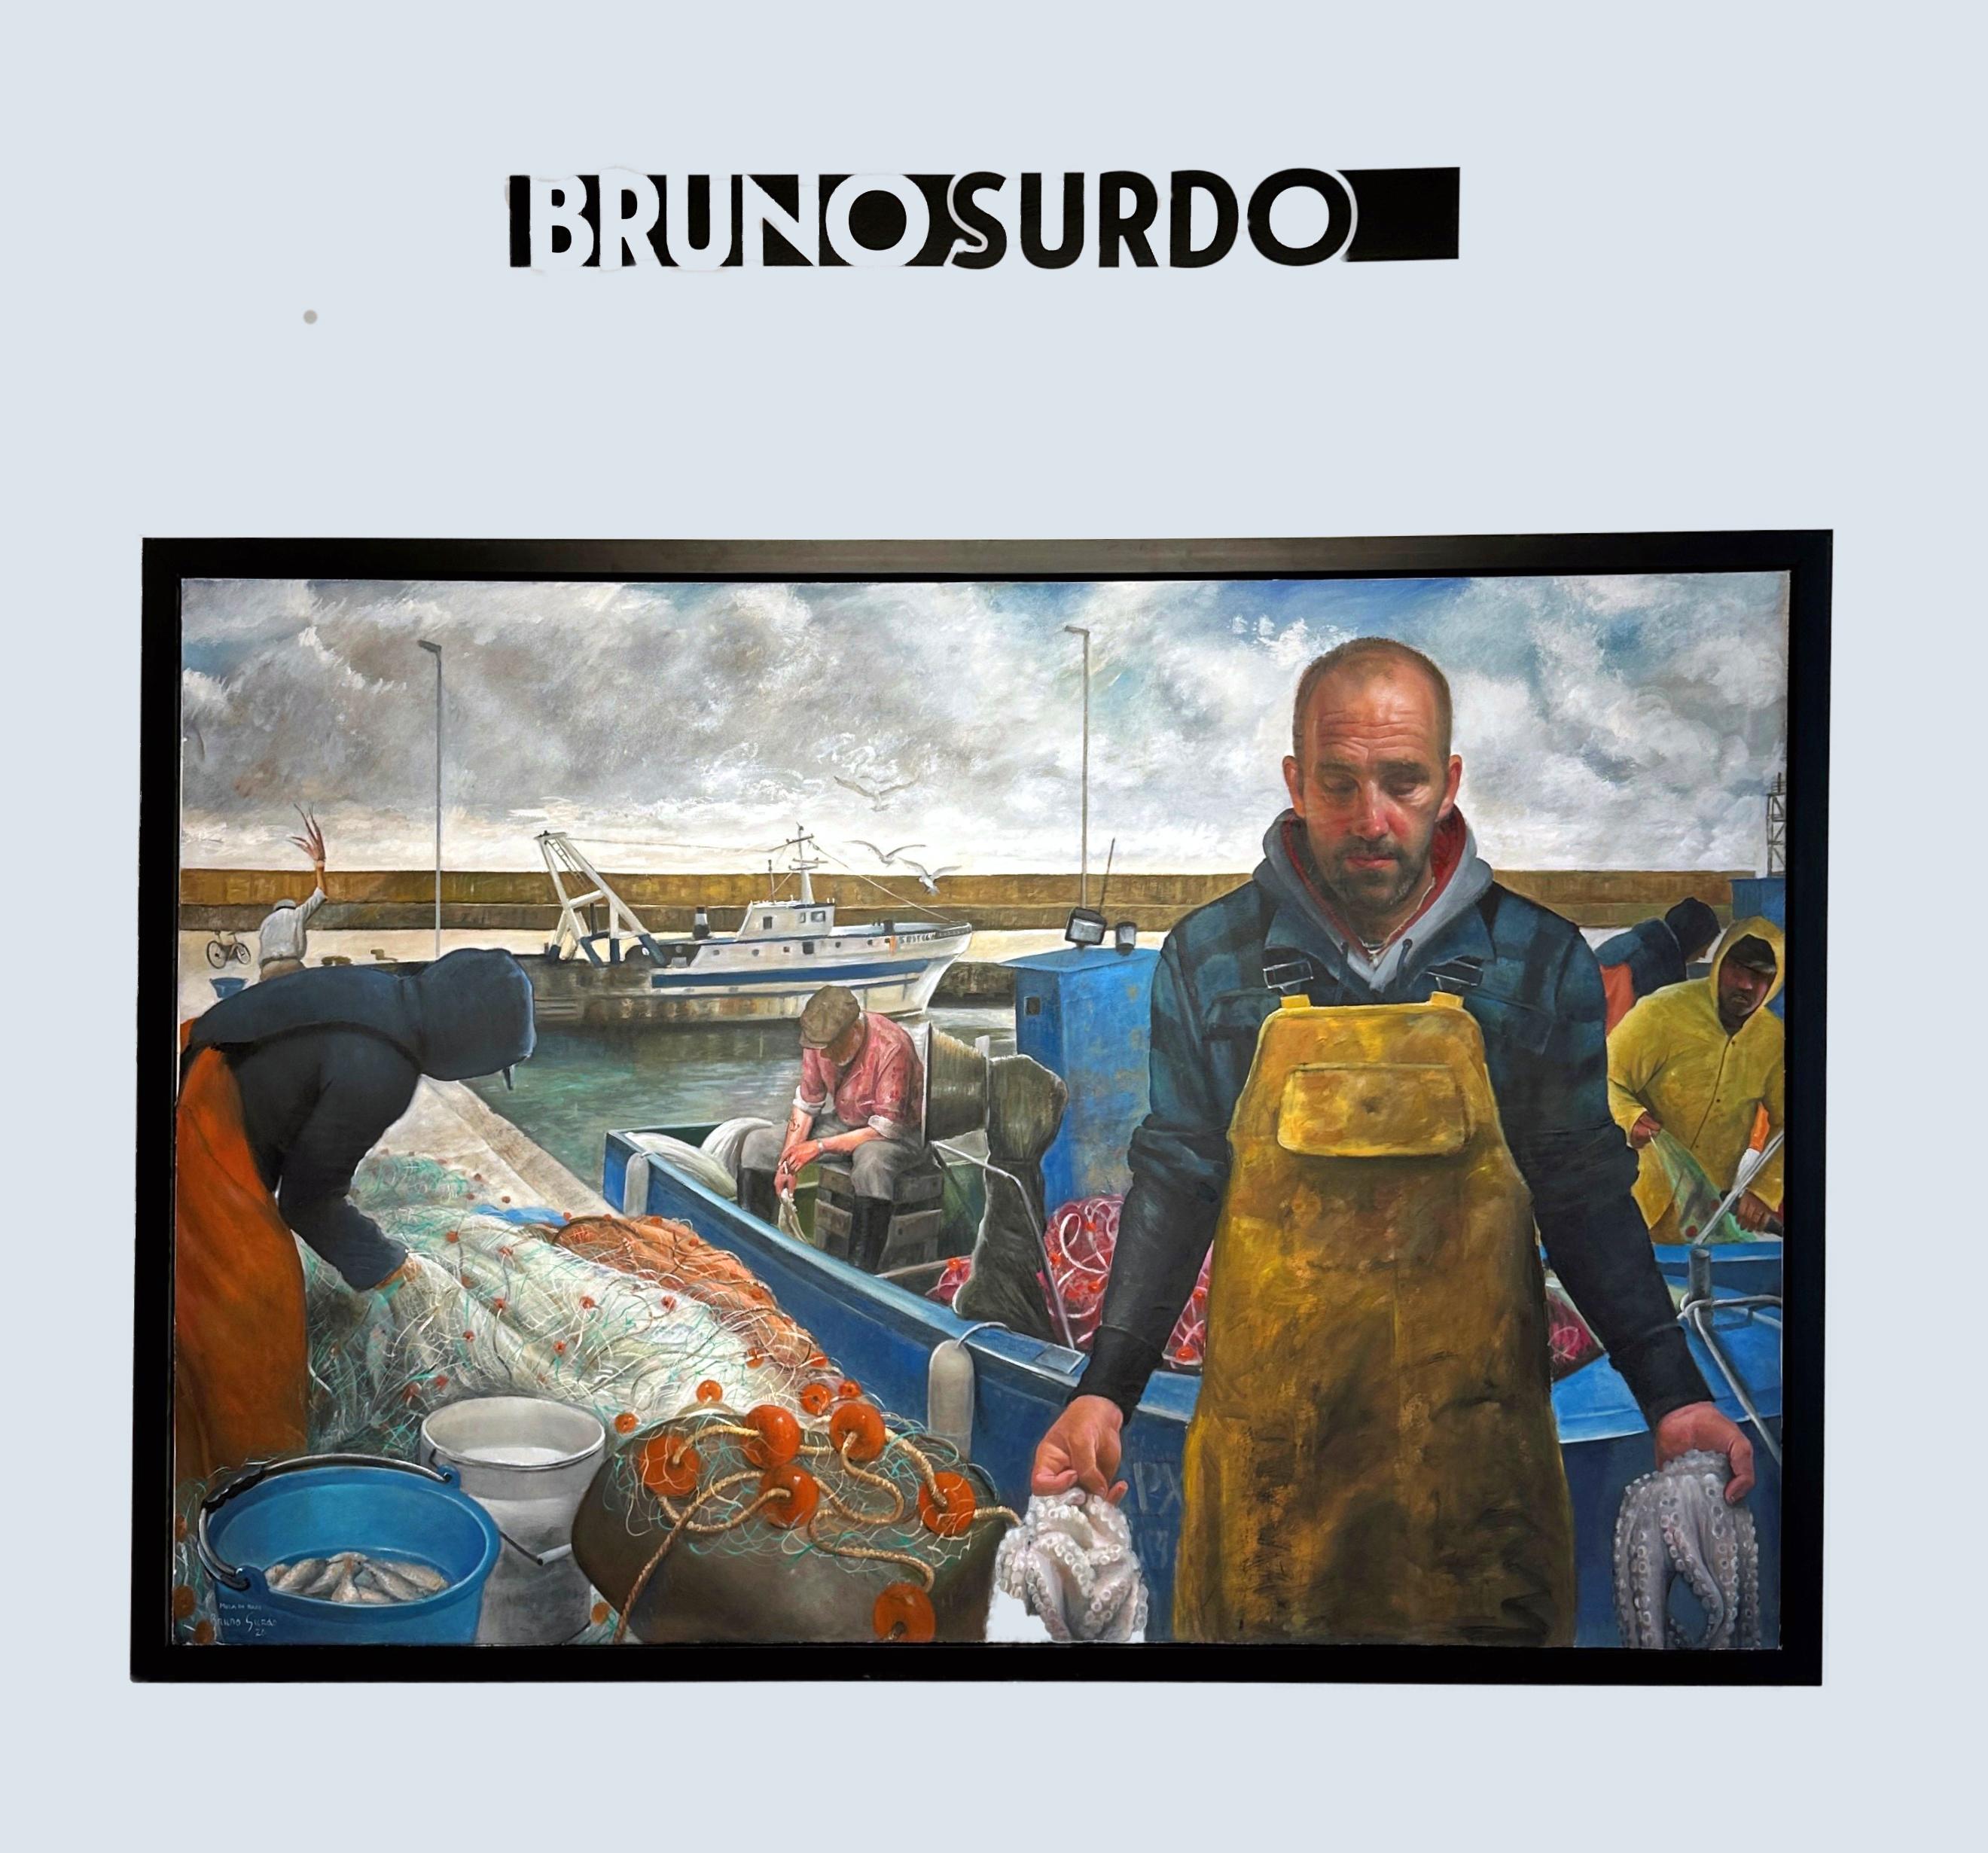 Le pêcheur de Mola di Bari, Puglia, Italie, peinture à l'huile à grande échelle, encadrée - Painting de Bruno Surdo